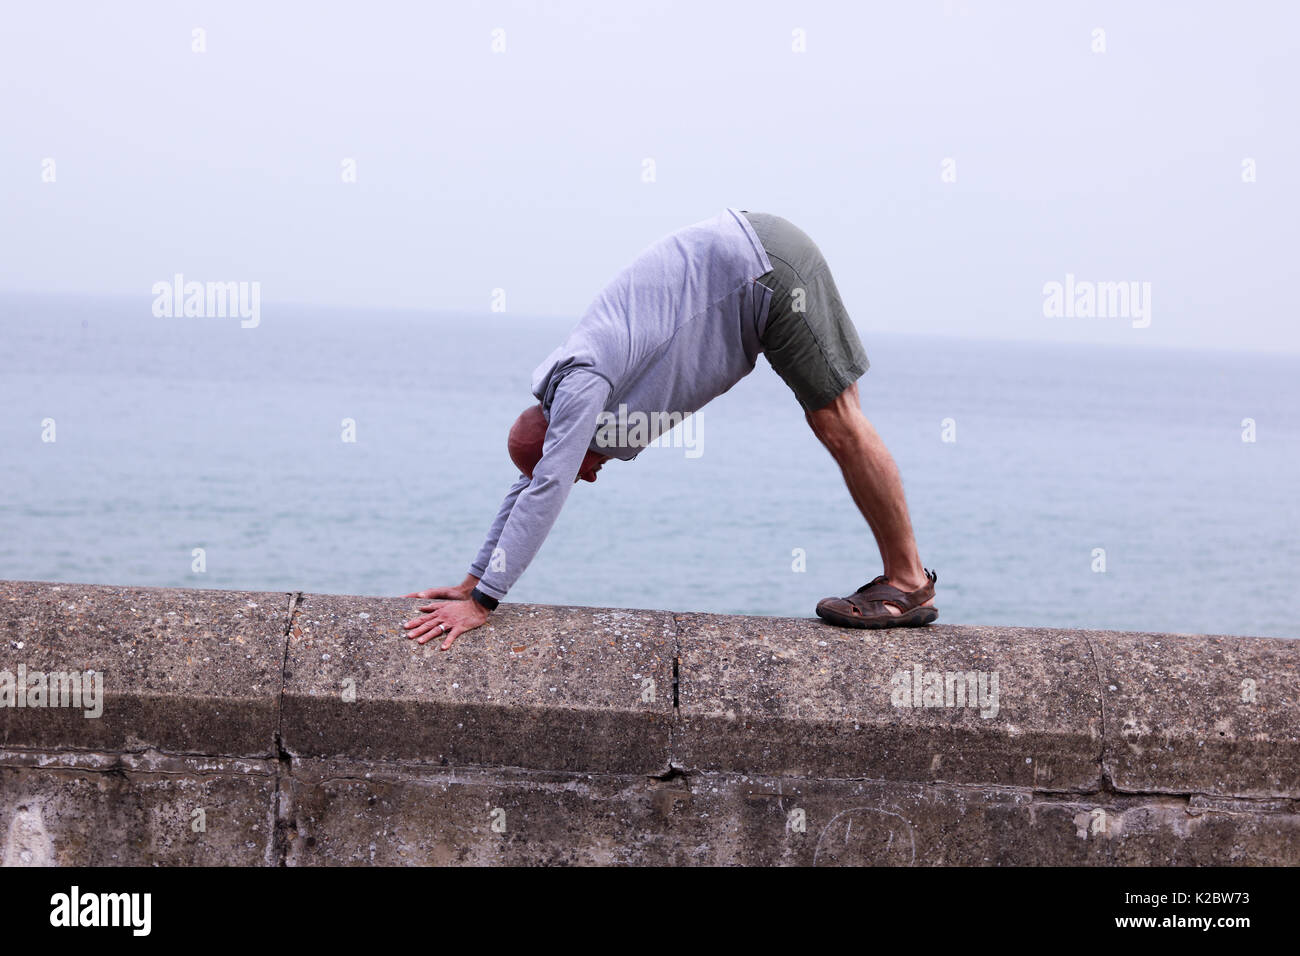 50 Jahre alter Mann einen nach unten schauender Hund yoga Pose auf Sea Wall  in Cromer, Norfolk, Großbritannien Stockfotografie - Alamy